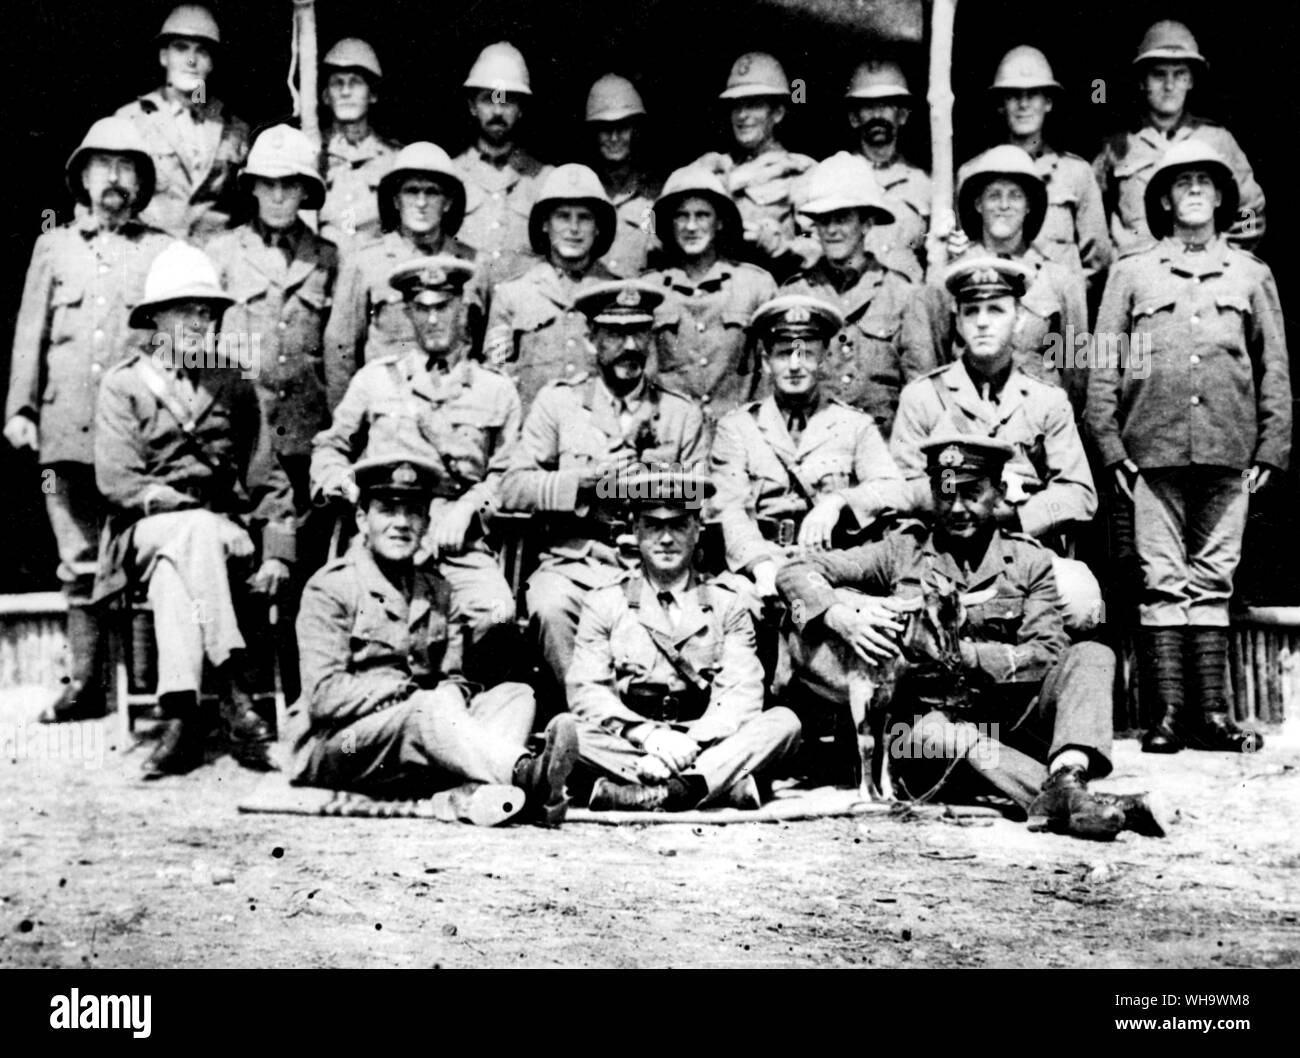 WW1: Gruppo della Naval Africa Expedition, 1915 ad eccezione dell'Ing. Liuet croce, chi ha preso la fotografia, Sub. Lieut. Tirer,' E.R.A. Berry e A.B. Behenna. Foto Stock